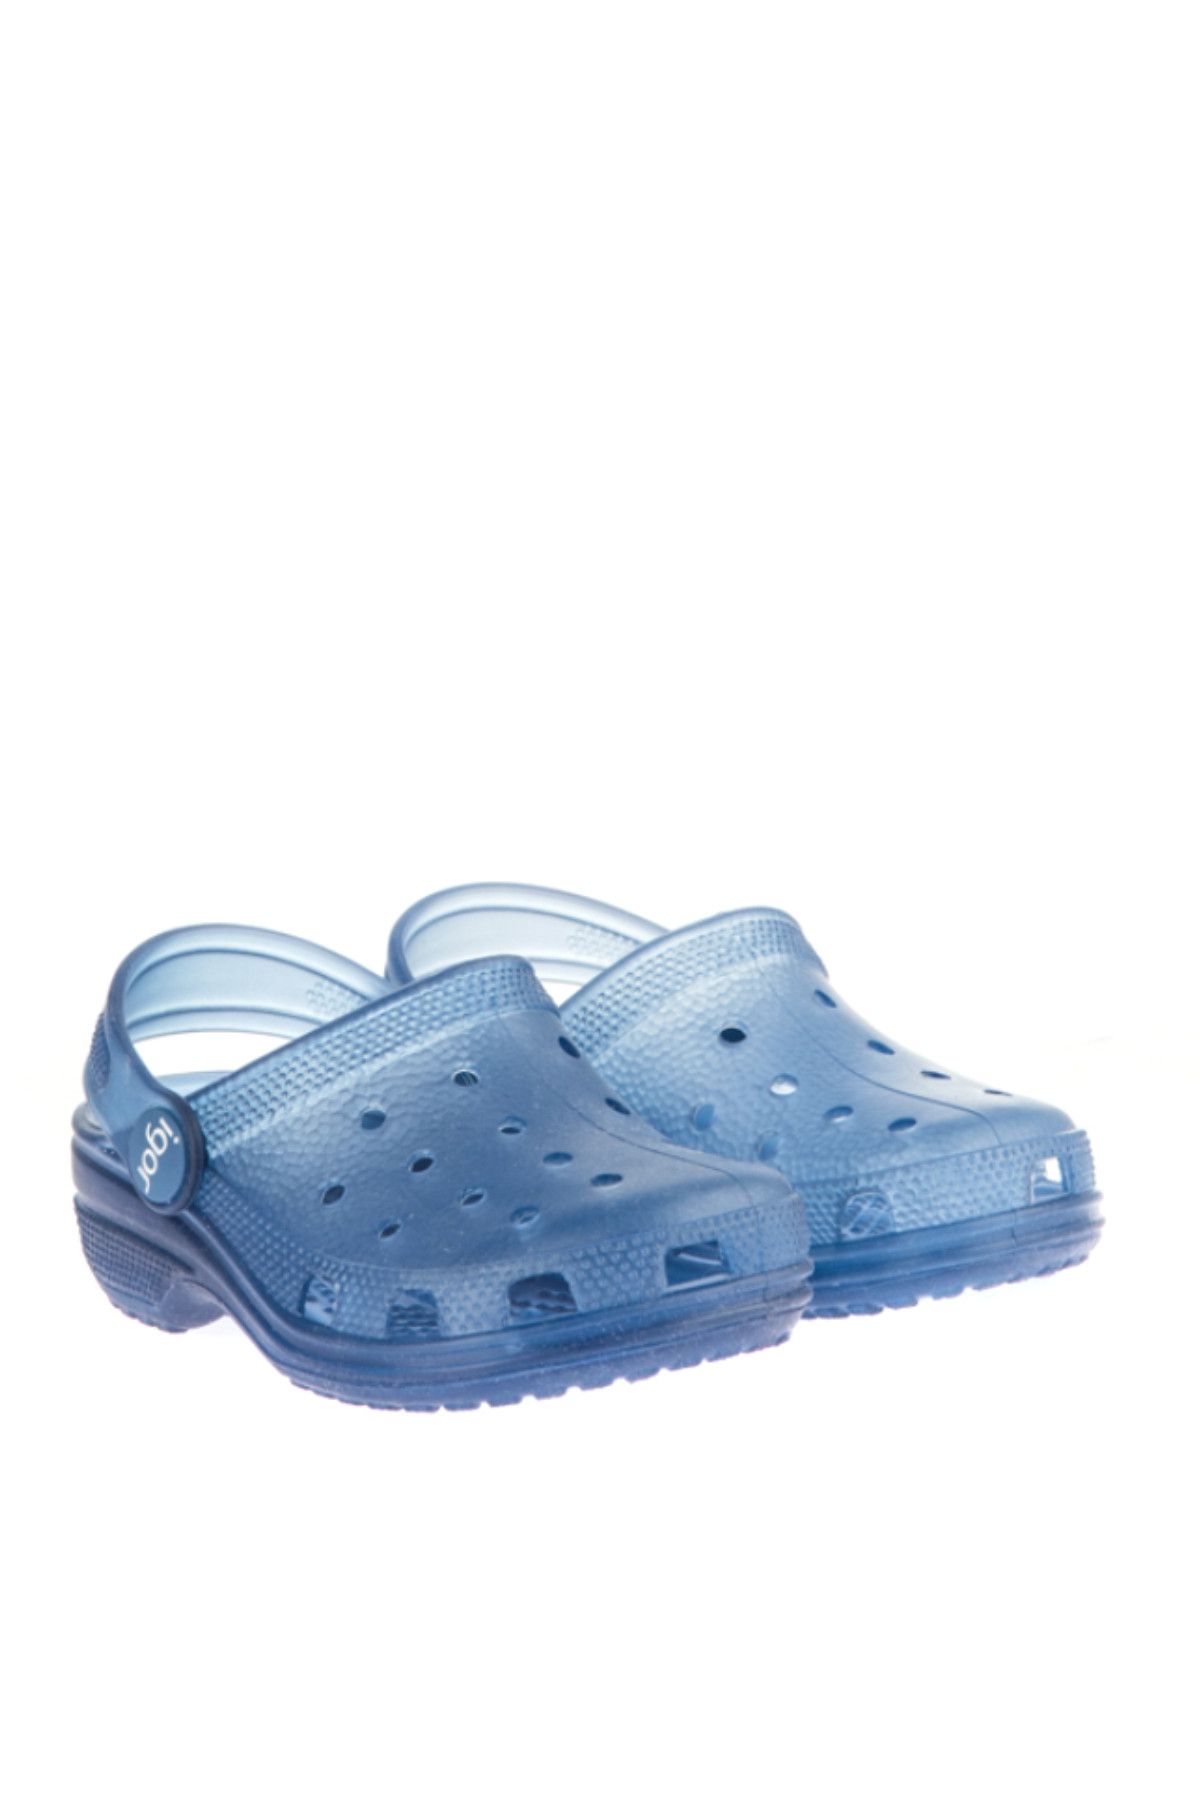 IGOR Mavi Unisex Çocuk Ayakkabı 1514220172